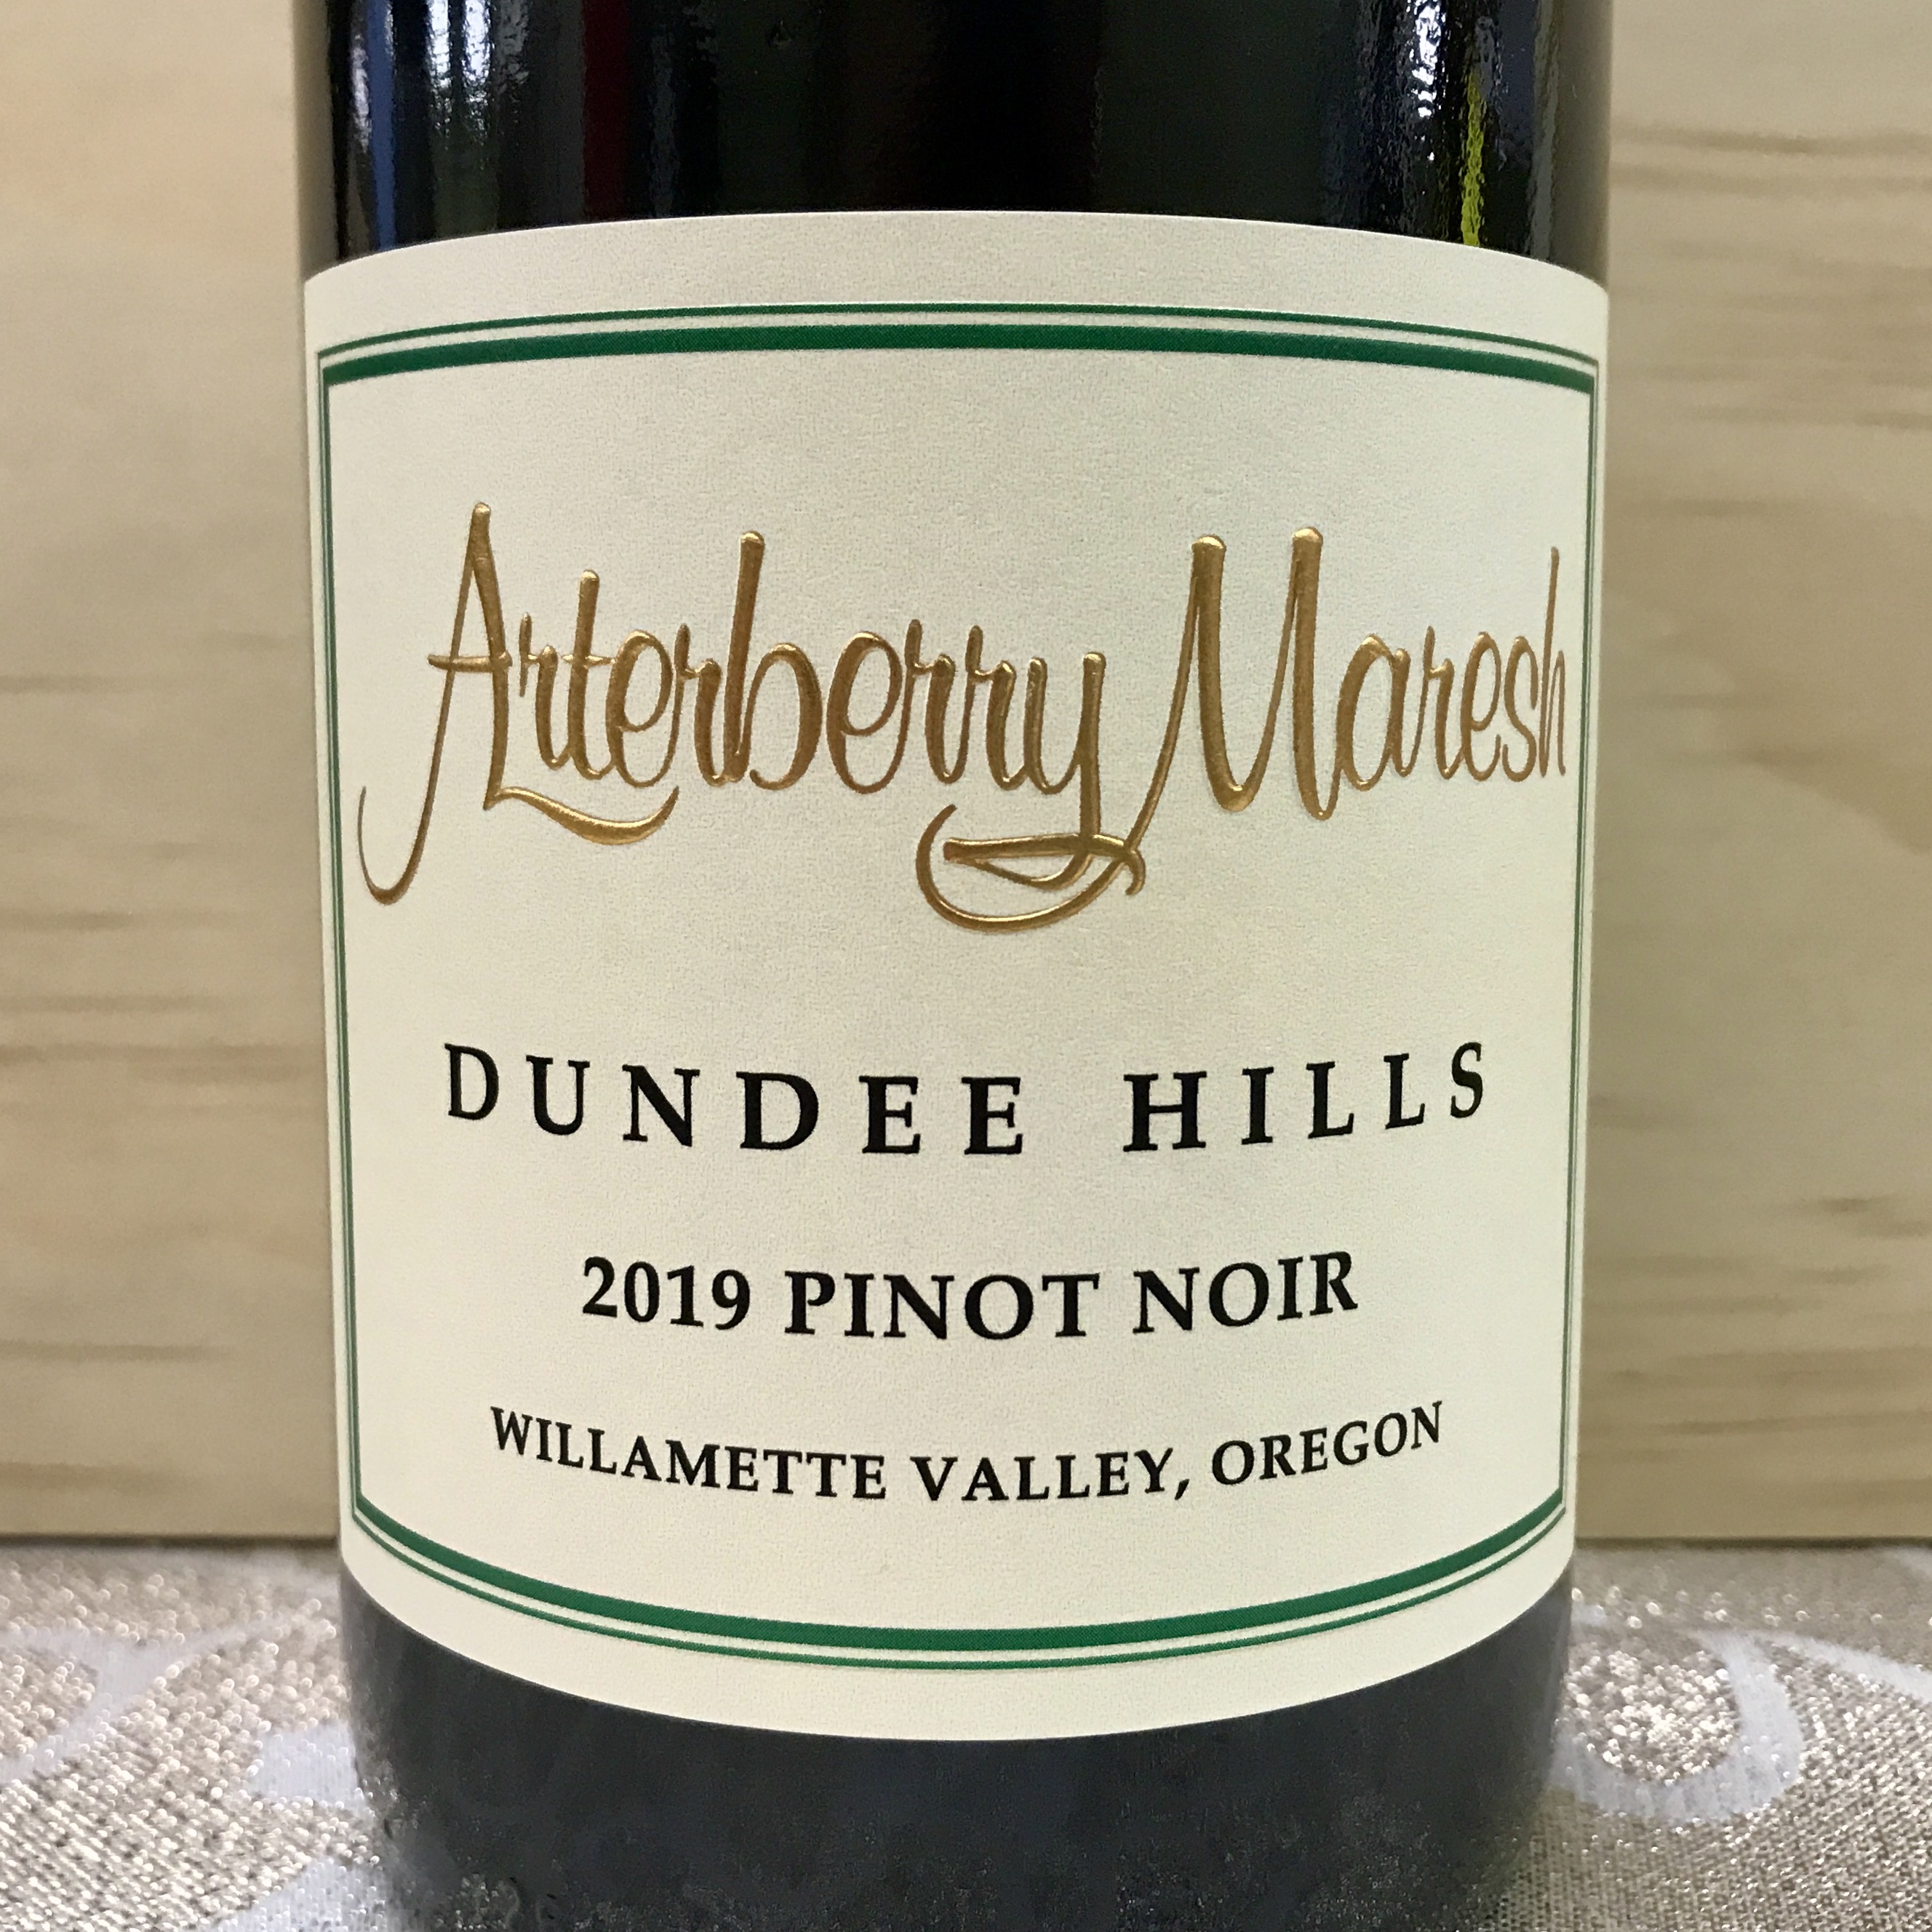 Arterberry Maresh Dundee Hills Willamette Pinot Noir 2019